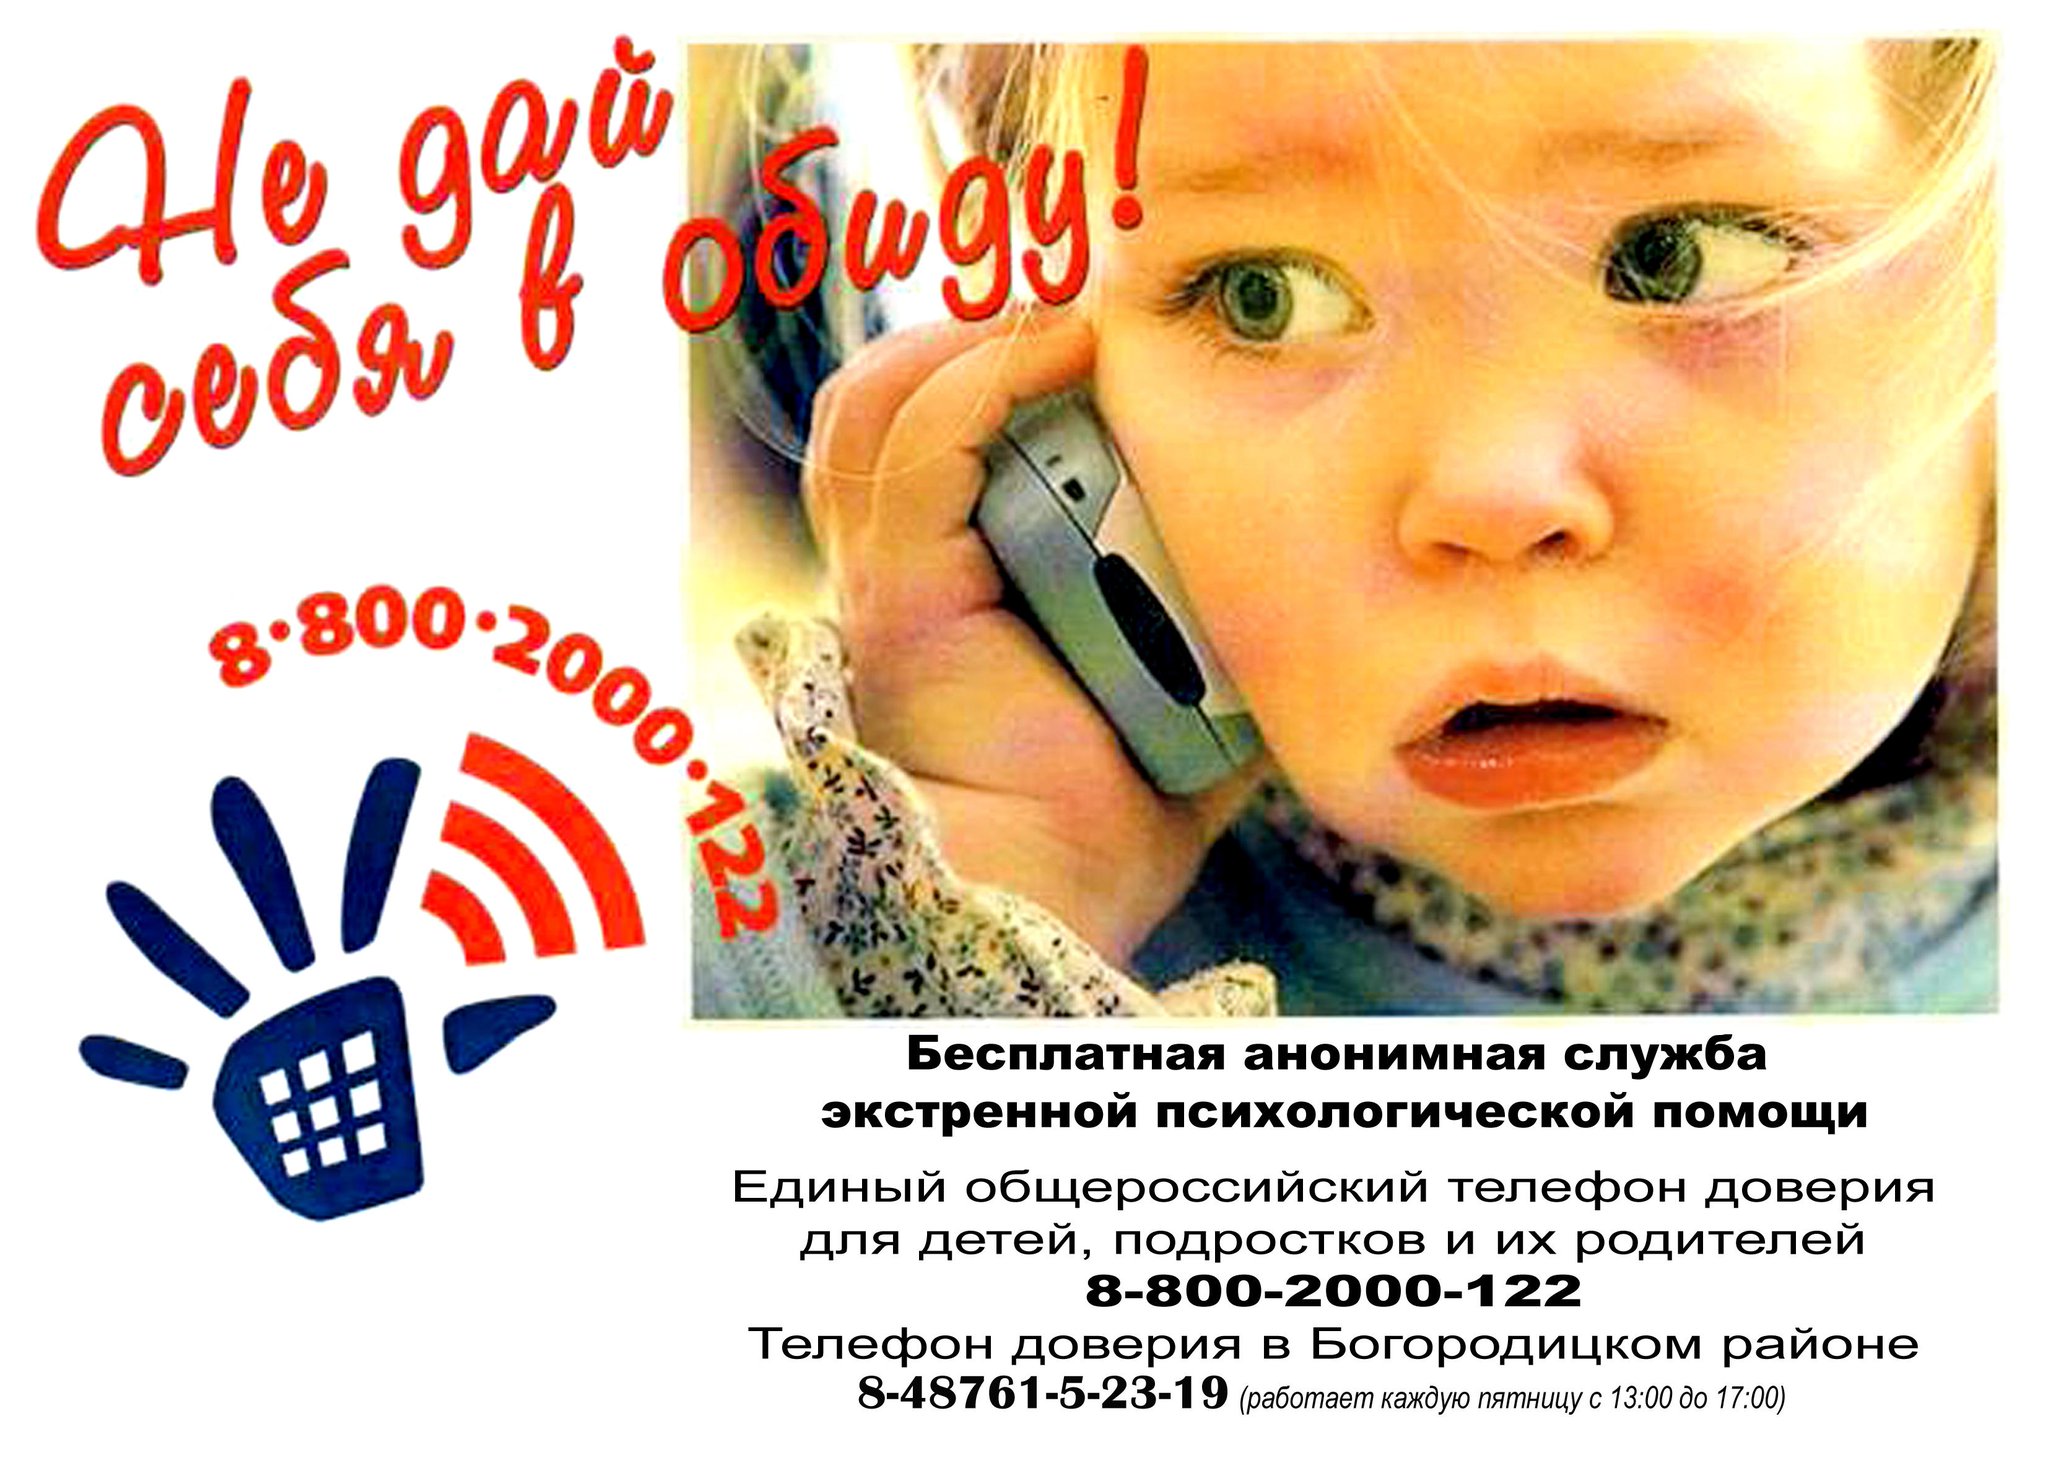 Государственная служба доверия. Единый детский телефон доверия 8-800-2000-122. Телефон доверия. Телефон доверия для детей. Детские телефоны доверия.